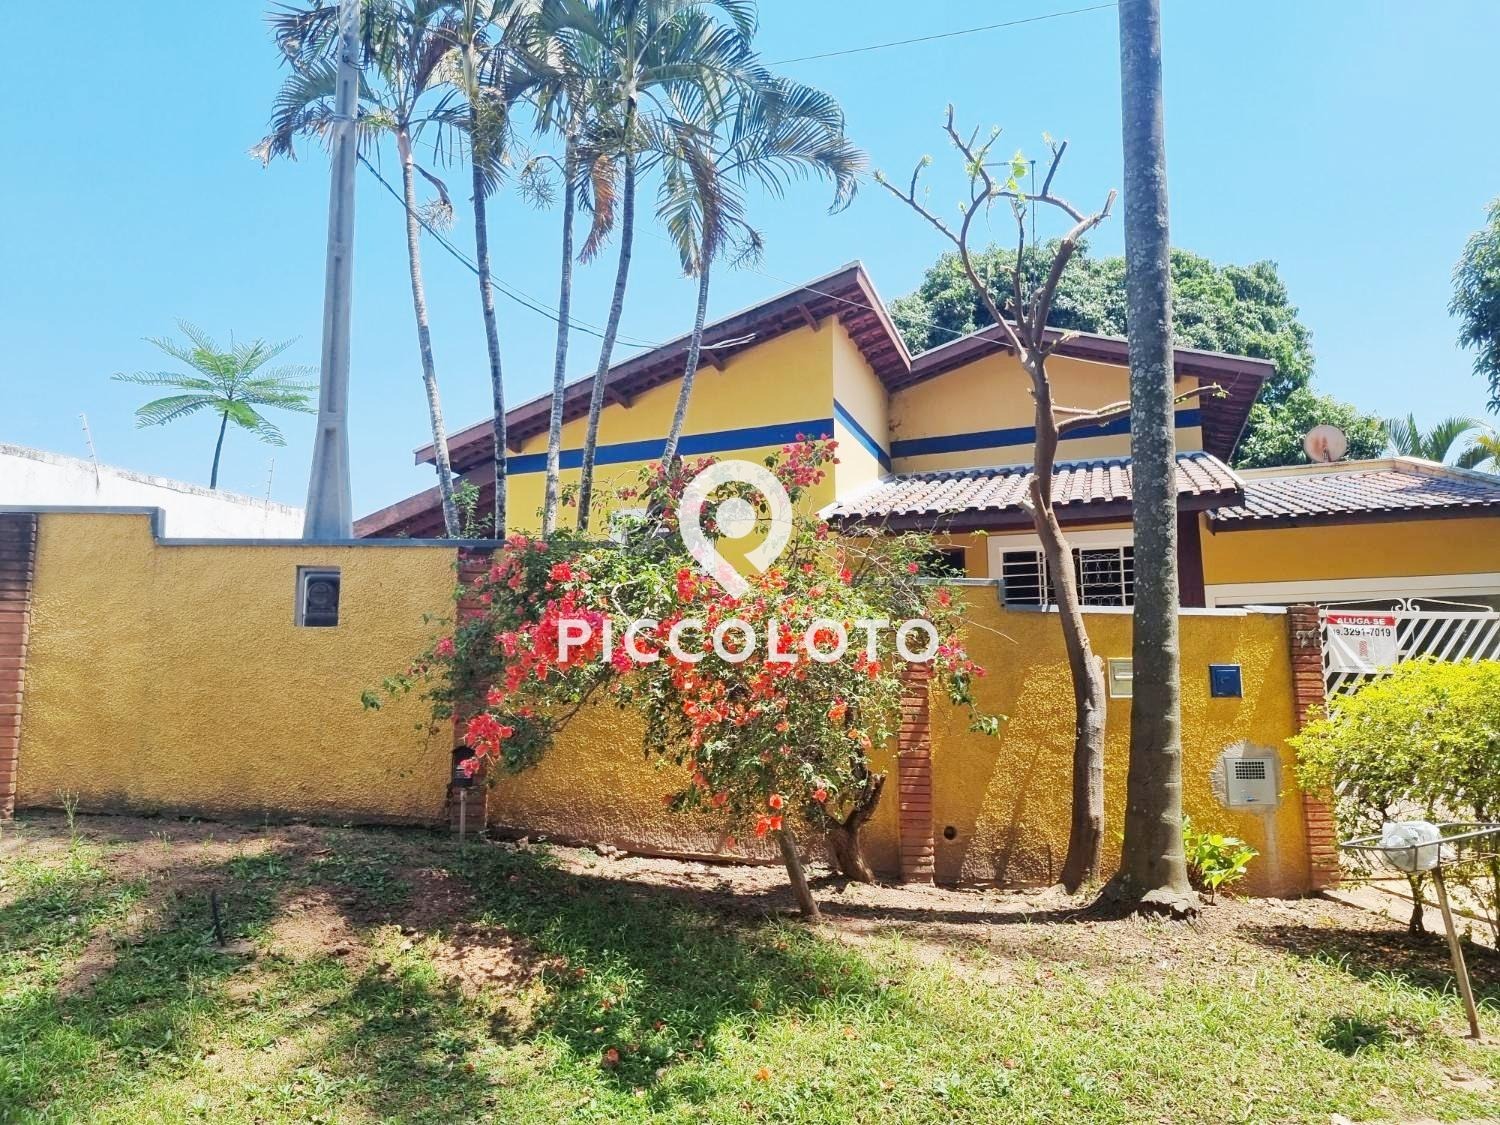 Piccoloto - Casa à venda no Parque Xangrilá em Campinas